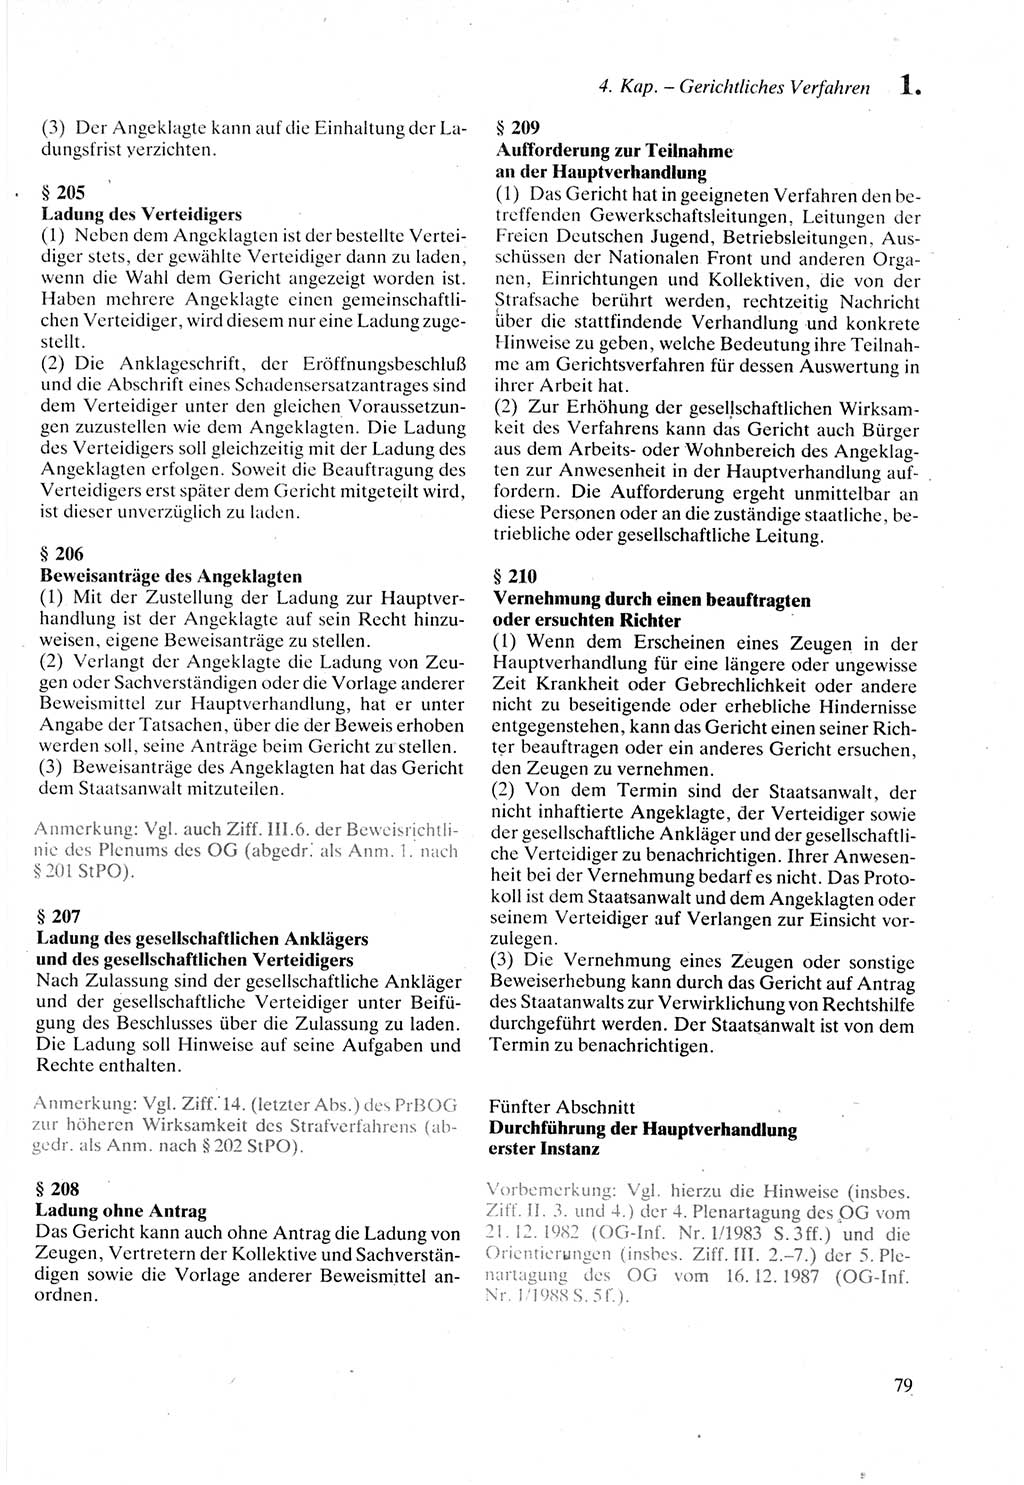 Strafprozeßordnung (StPO) der Deutschen Demokratischen Republik (DDR) sowie angrenzende Gesetze und Bestimmungen 1987, Seite 79 (StPO DDR Ges. Best. 1987, S. 79)